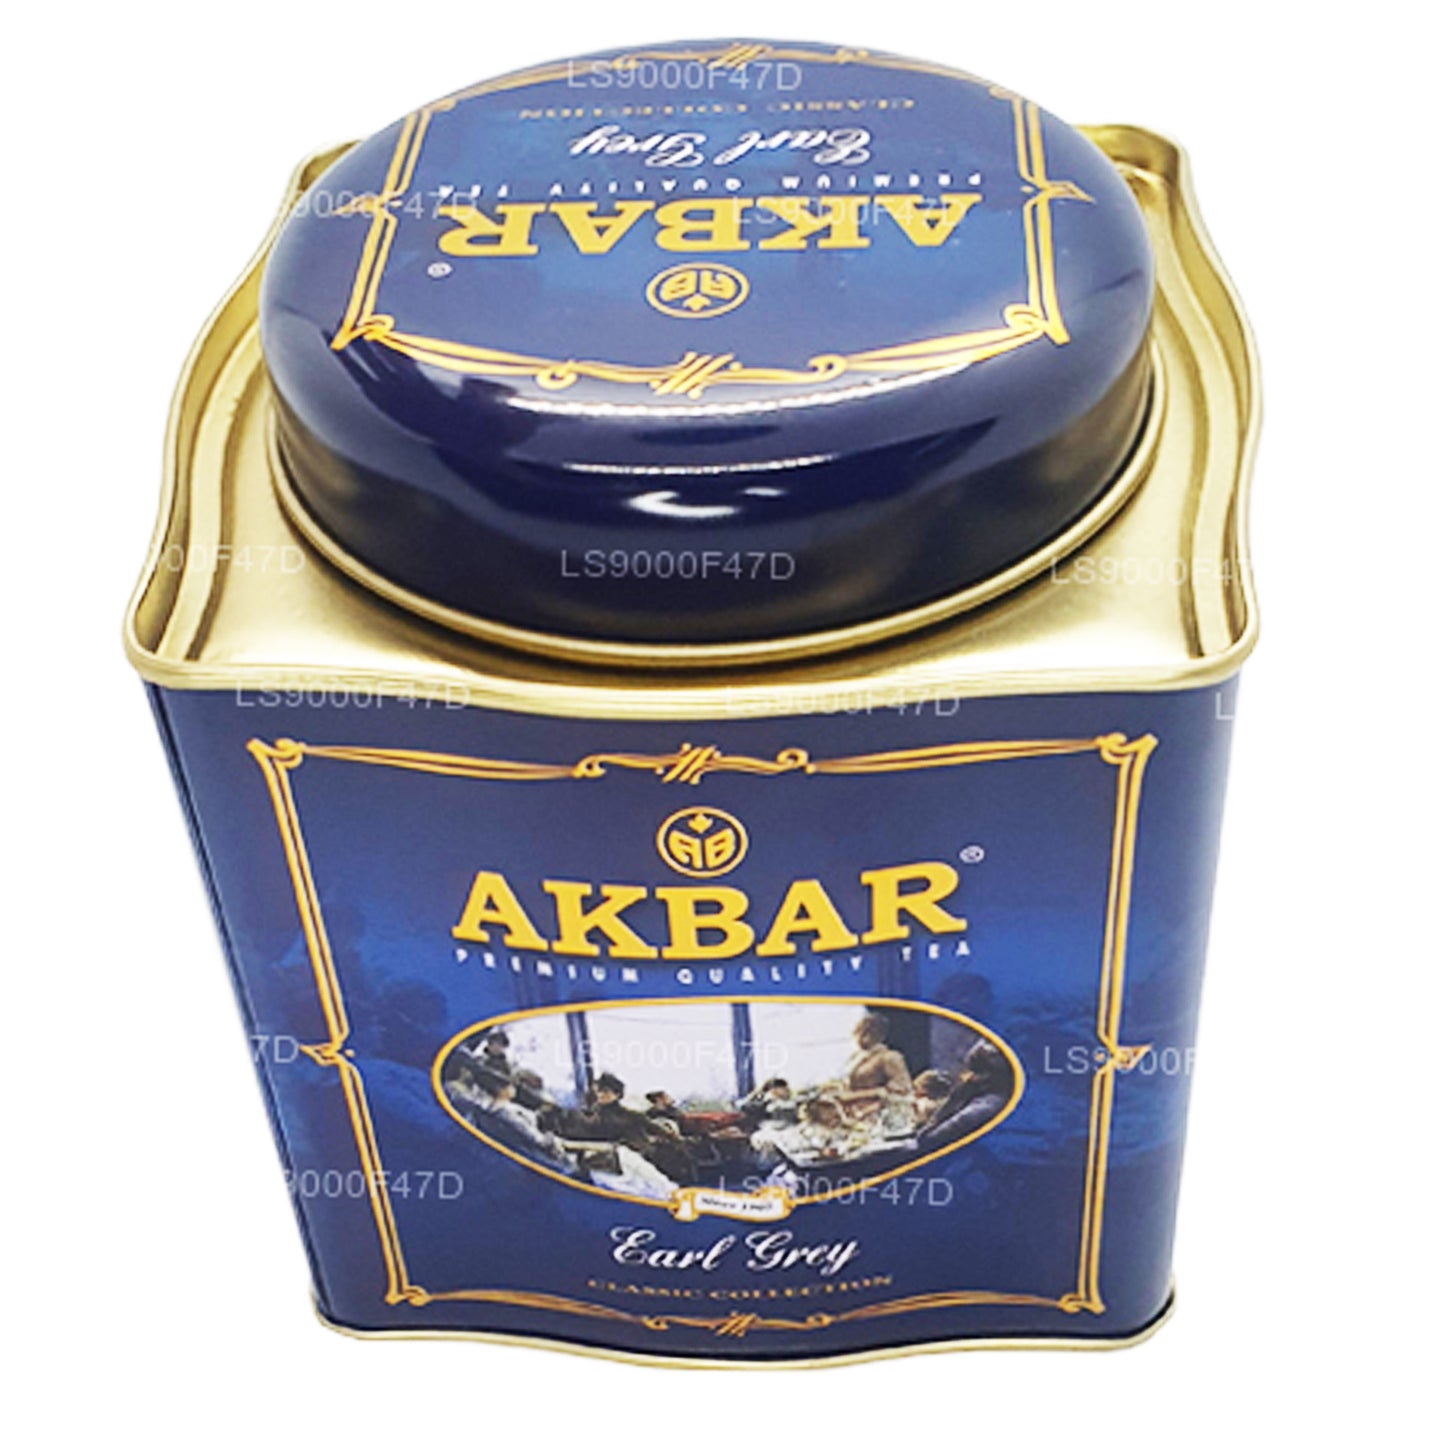 Akbar Classic Earl Grey Leaf Tea (250g) Tin